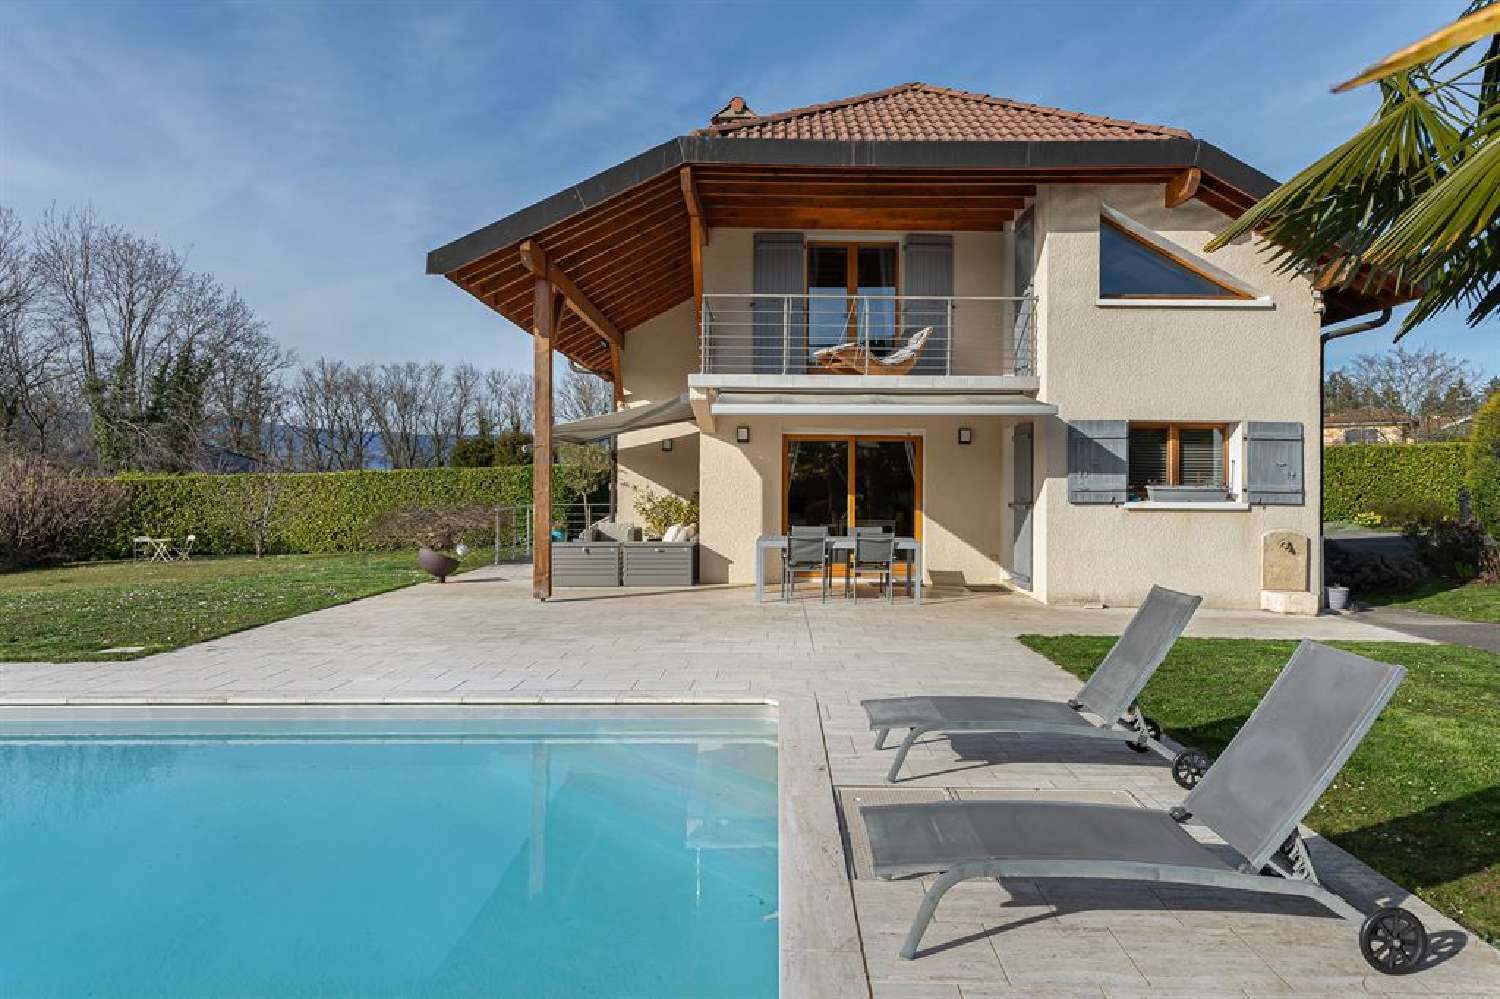  à vendre villa Messery Haute-Savoie 2